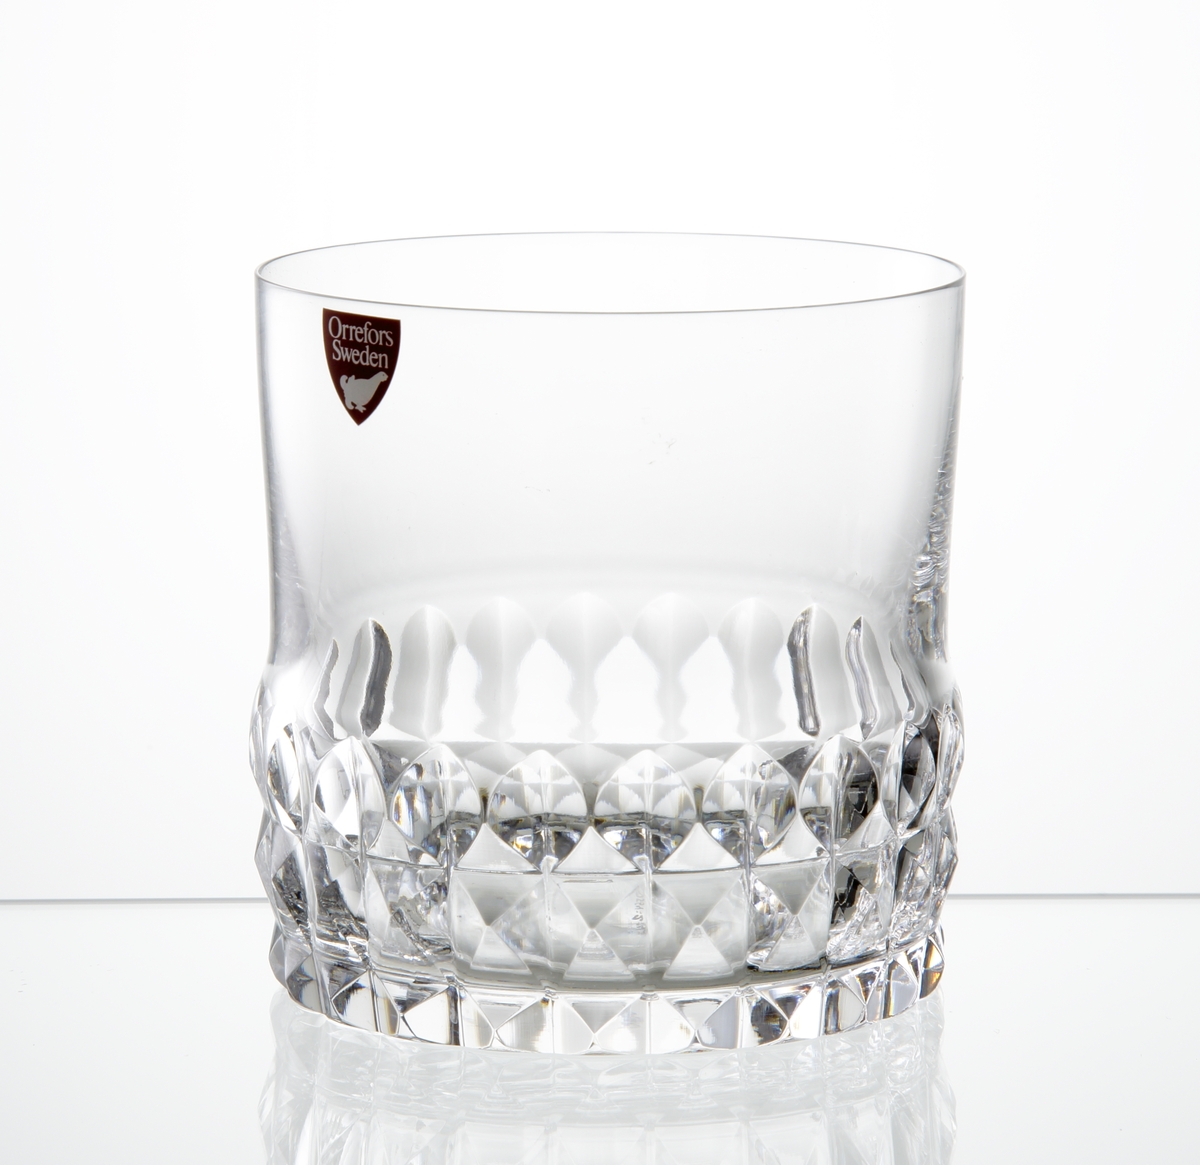 Design: Ingeborg Lundin.
Whiskyglas, cylindrisk kupa med diamantslipad dekor runt kupans nedre del. 
Fabriksmärke: Röd botten med vit text.